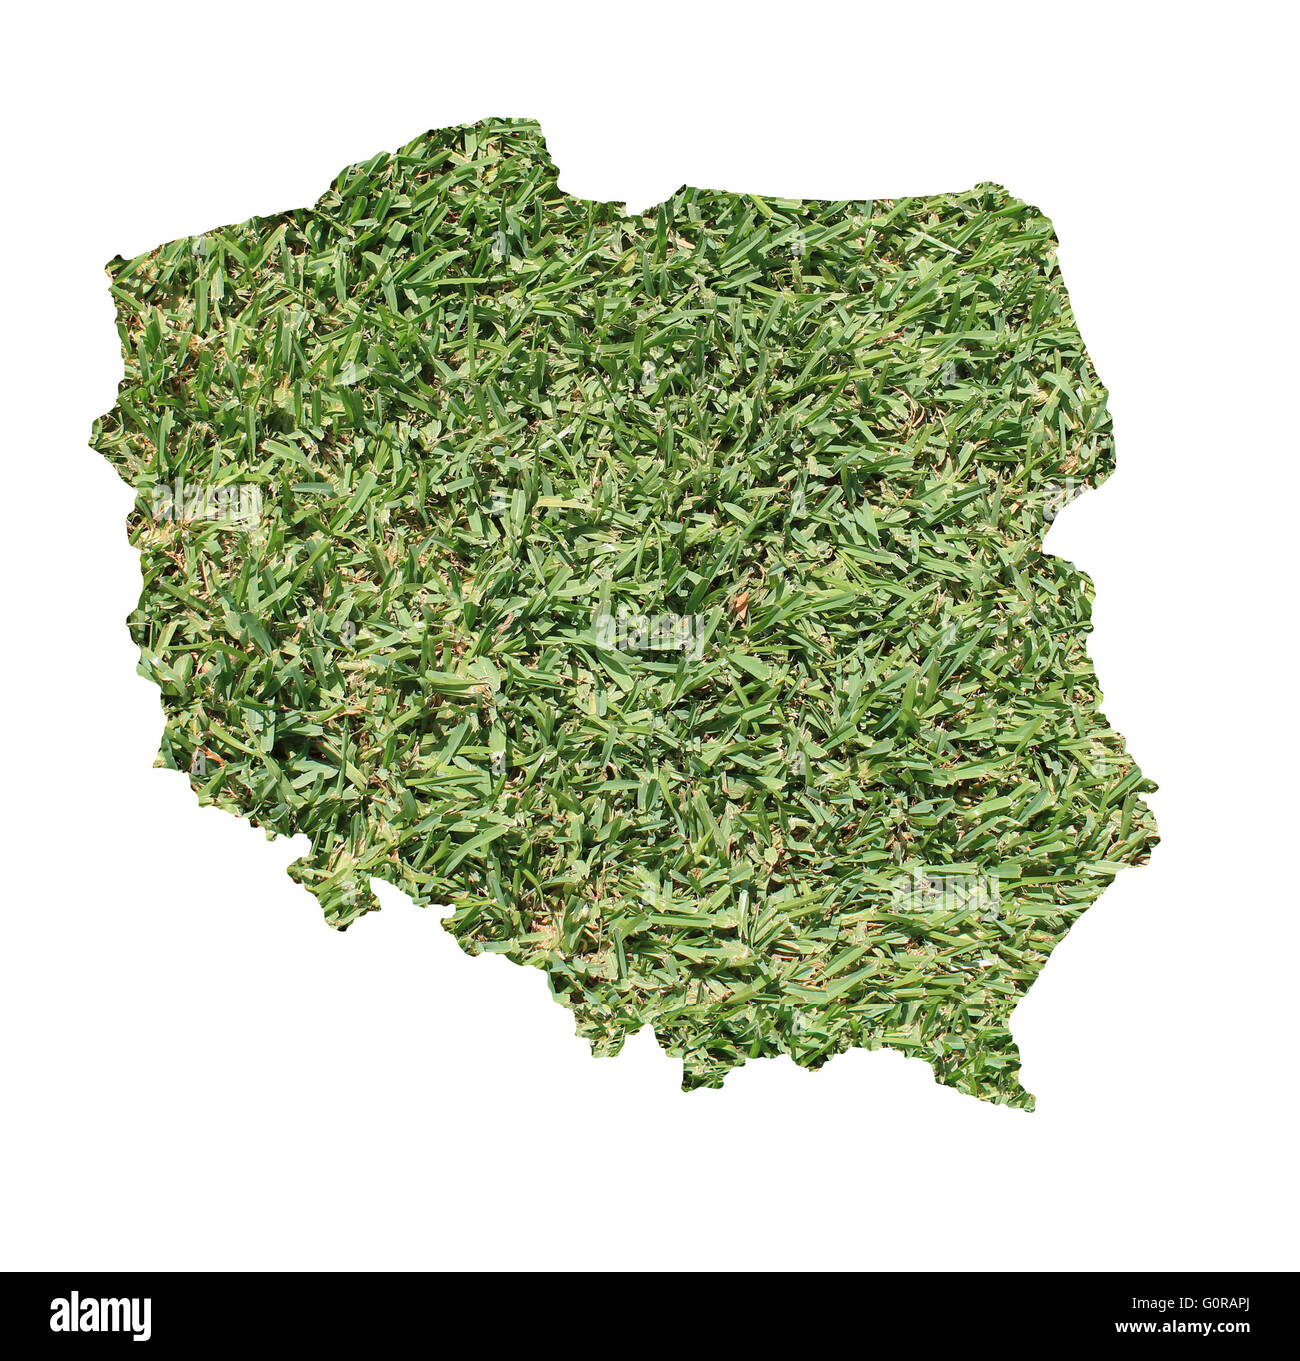 Carte de Pologne rempli d'herbe verte, environnementale et écologique. Banque D'Images